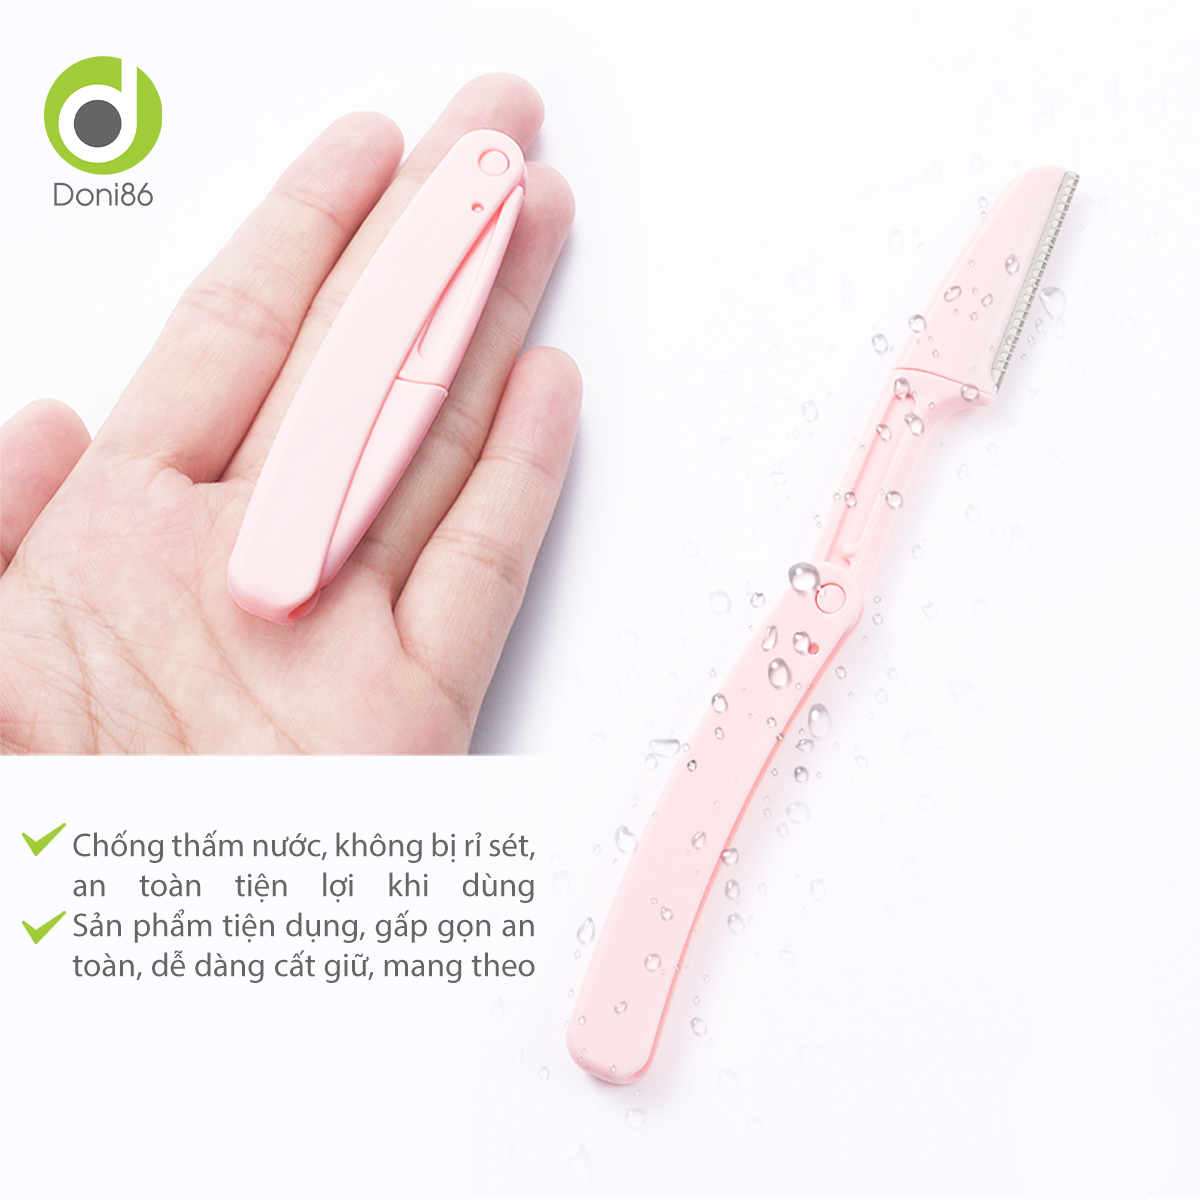 Bộ 3 cây tỉa lông mày, hỗ trợ định hình lông mày, tay cầm nhựa cứng chắc chắn, dễ sử dụng - Doni - DOPK350